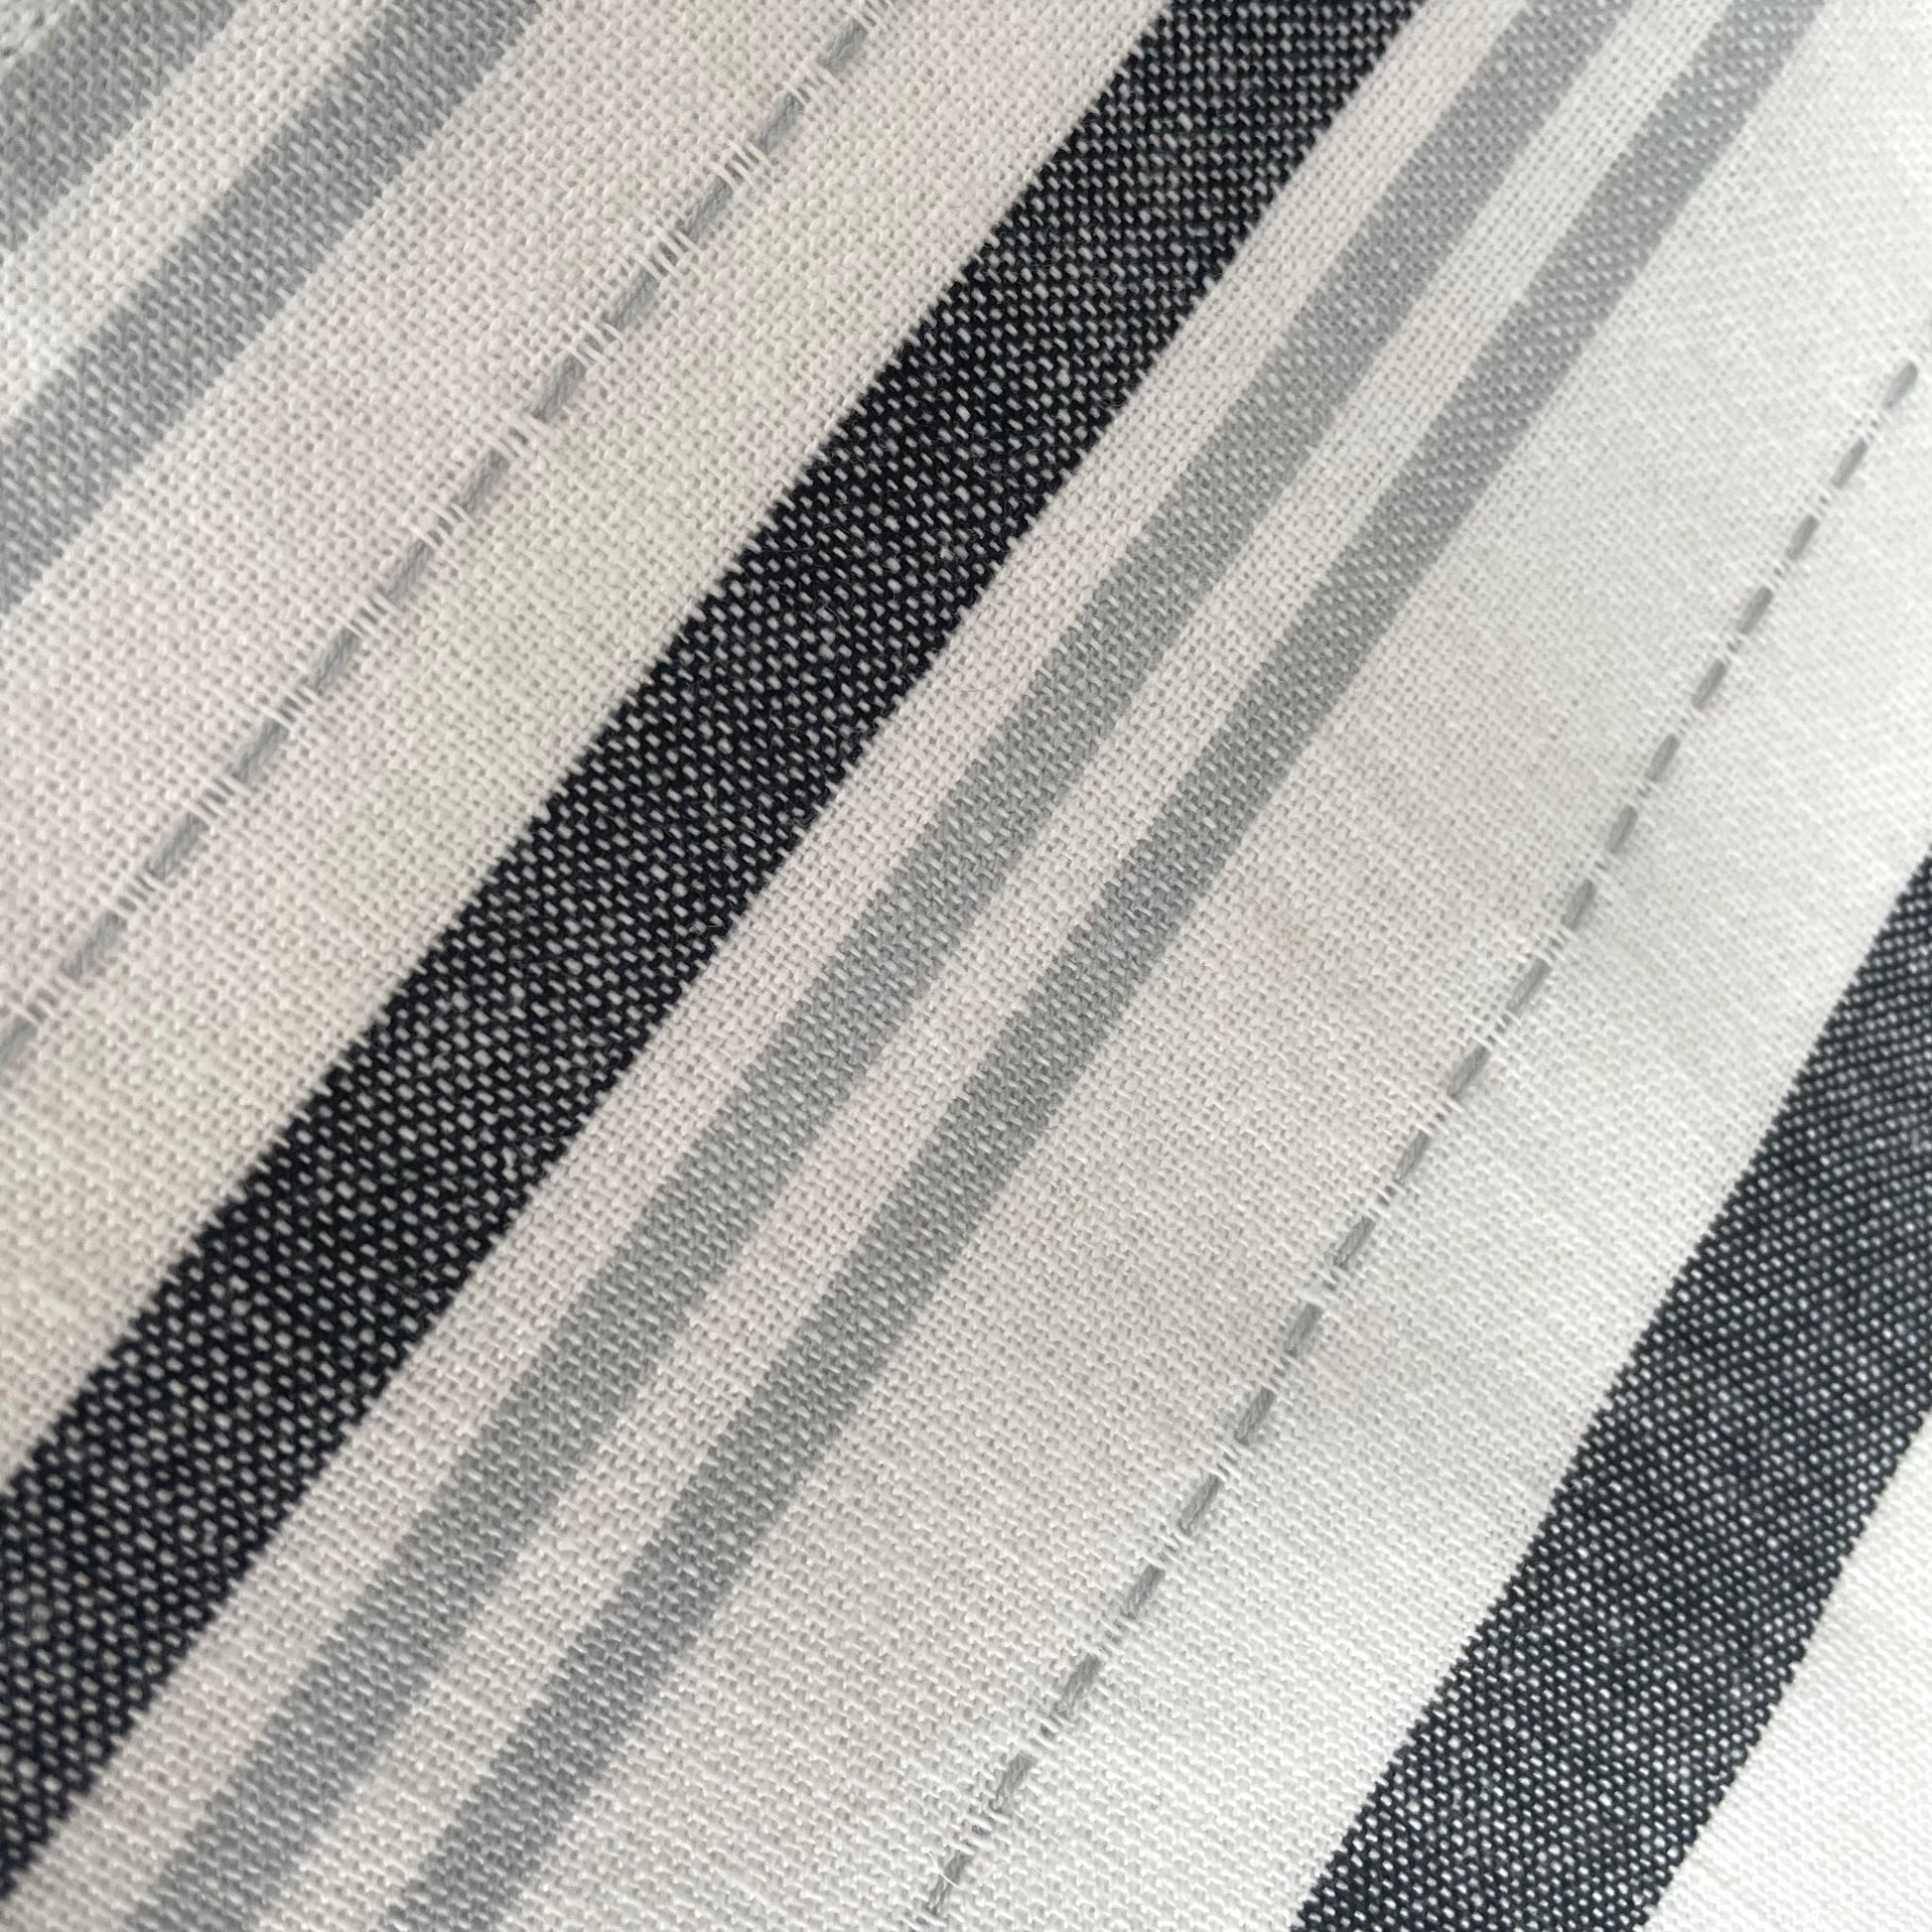 grey and white striped 18 inch square 100 percent cotton napkin set